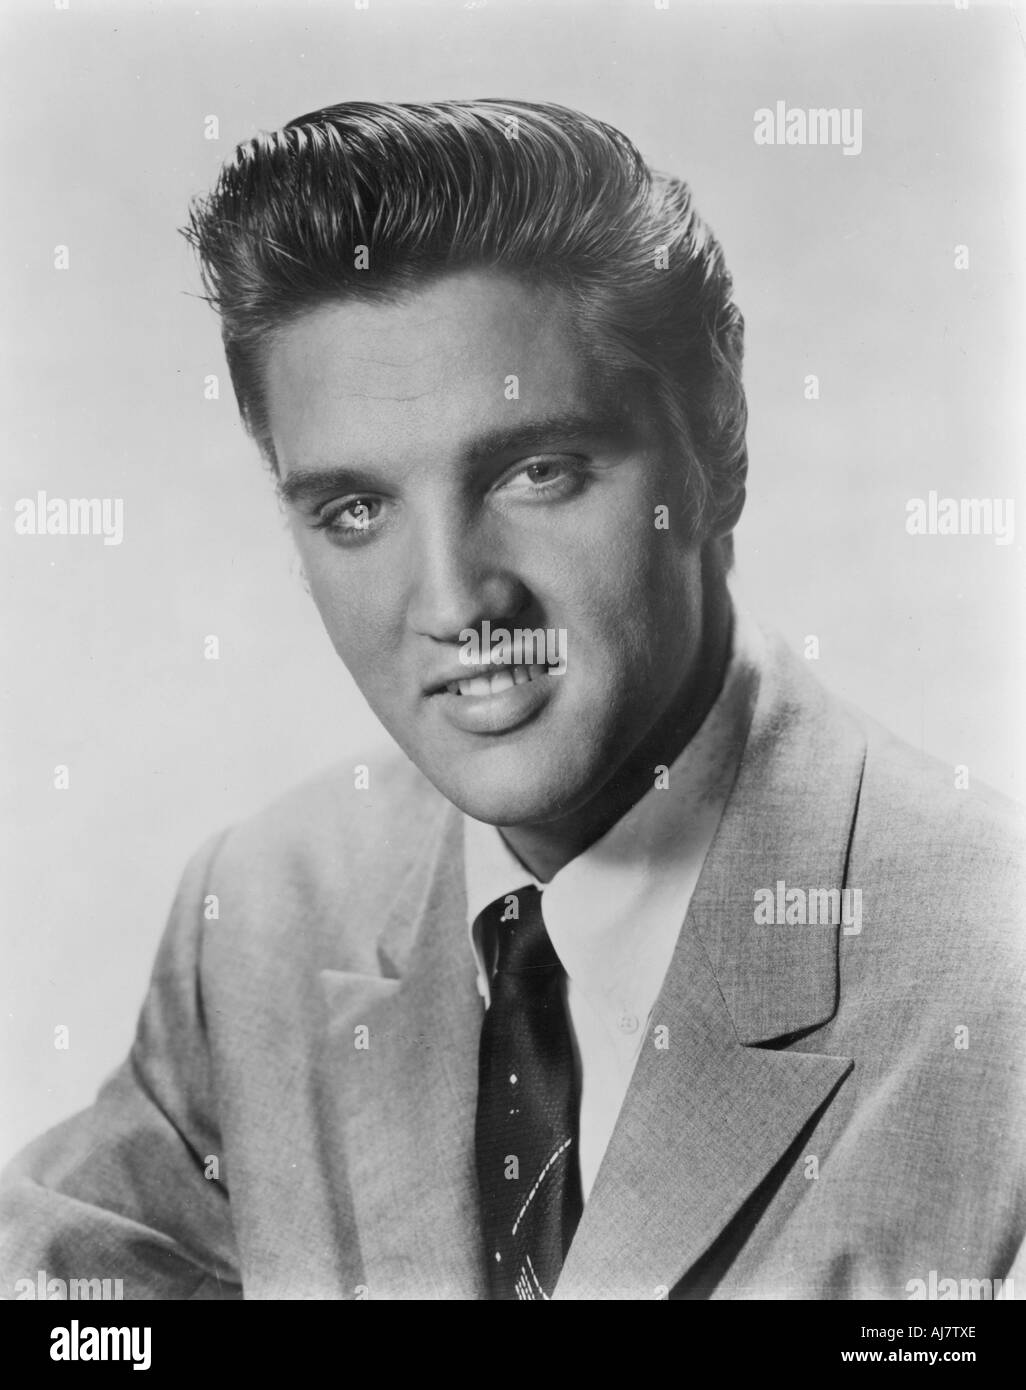 Elvis Presley, amerikanischer Sänger und Schauspieler, 1956. Artist: Unbekannt Stockfoto